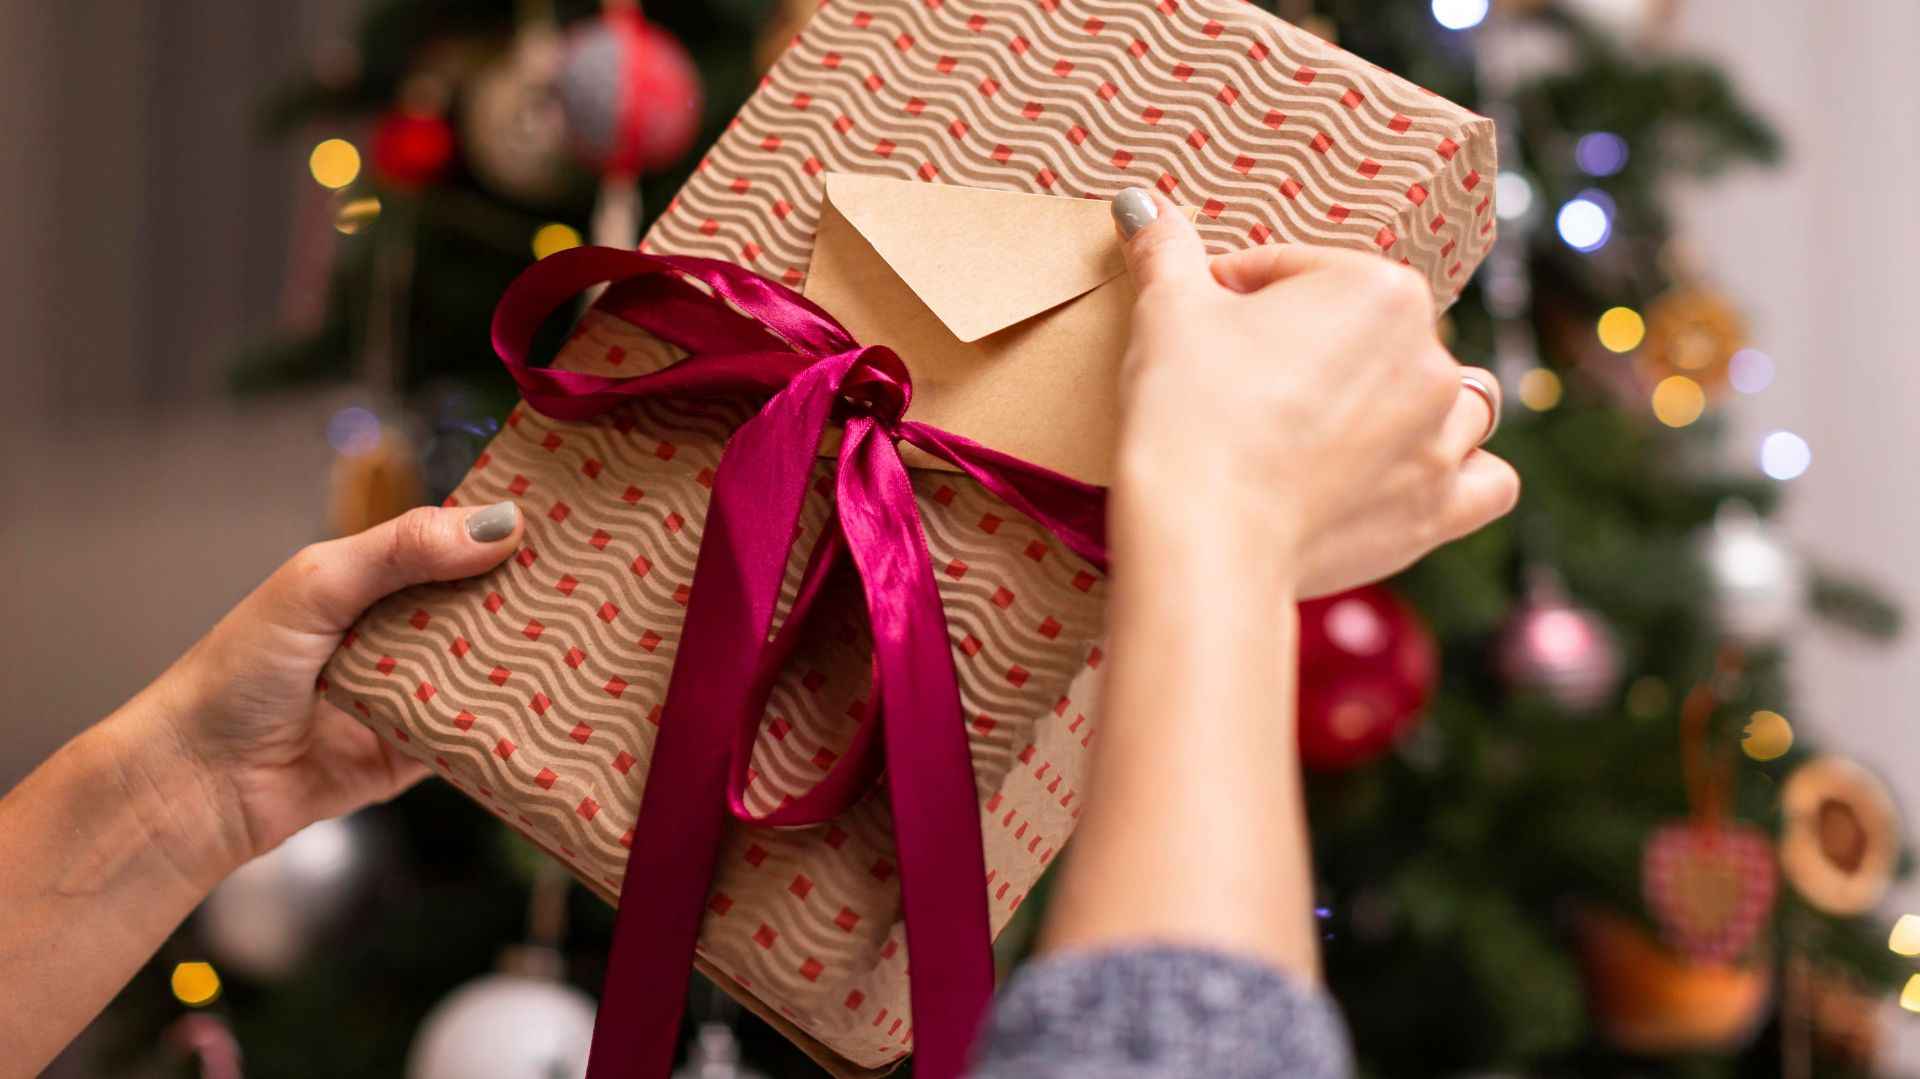 Mareo prueba Velas 75 regalos para clientes en Navidad ¡baratos y originales!